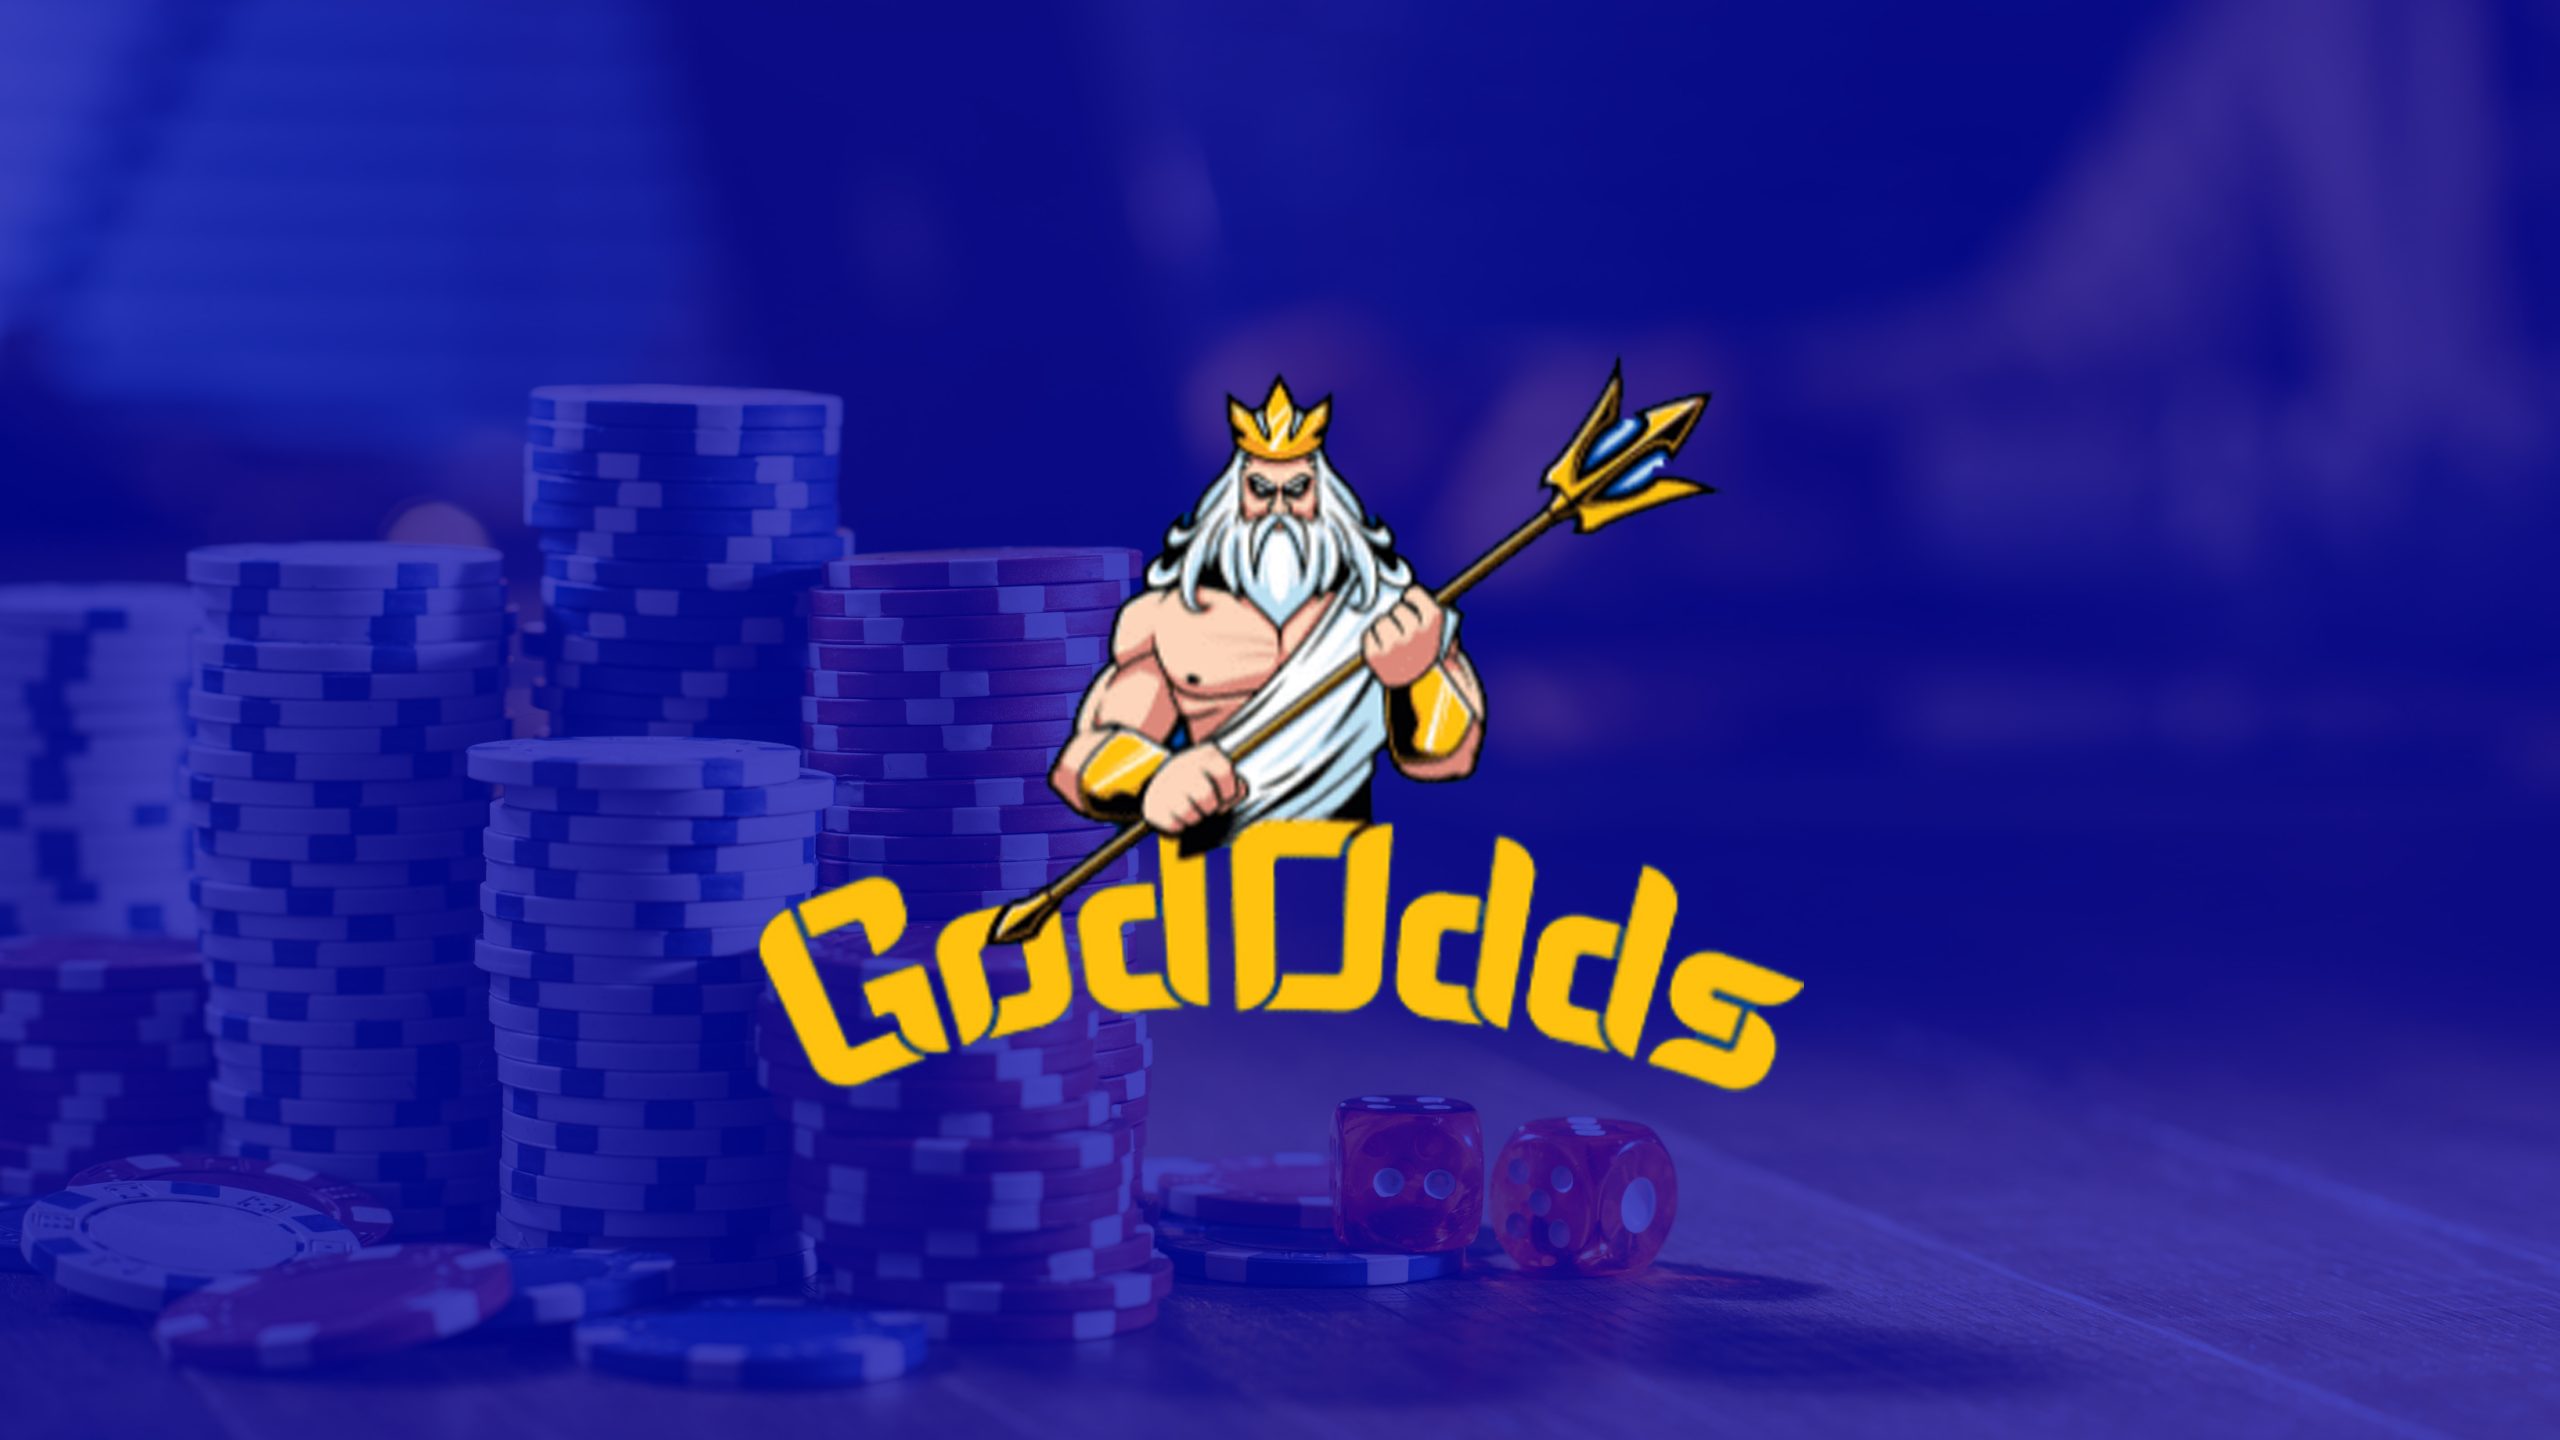 God Odds Casino Reviews